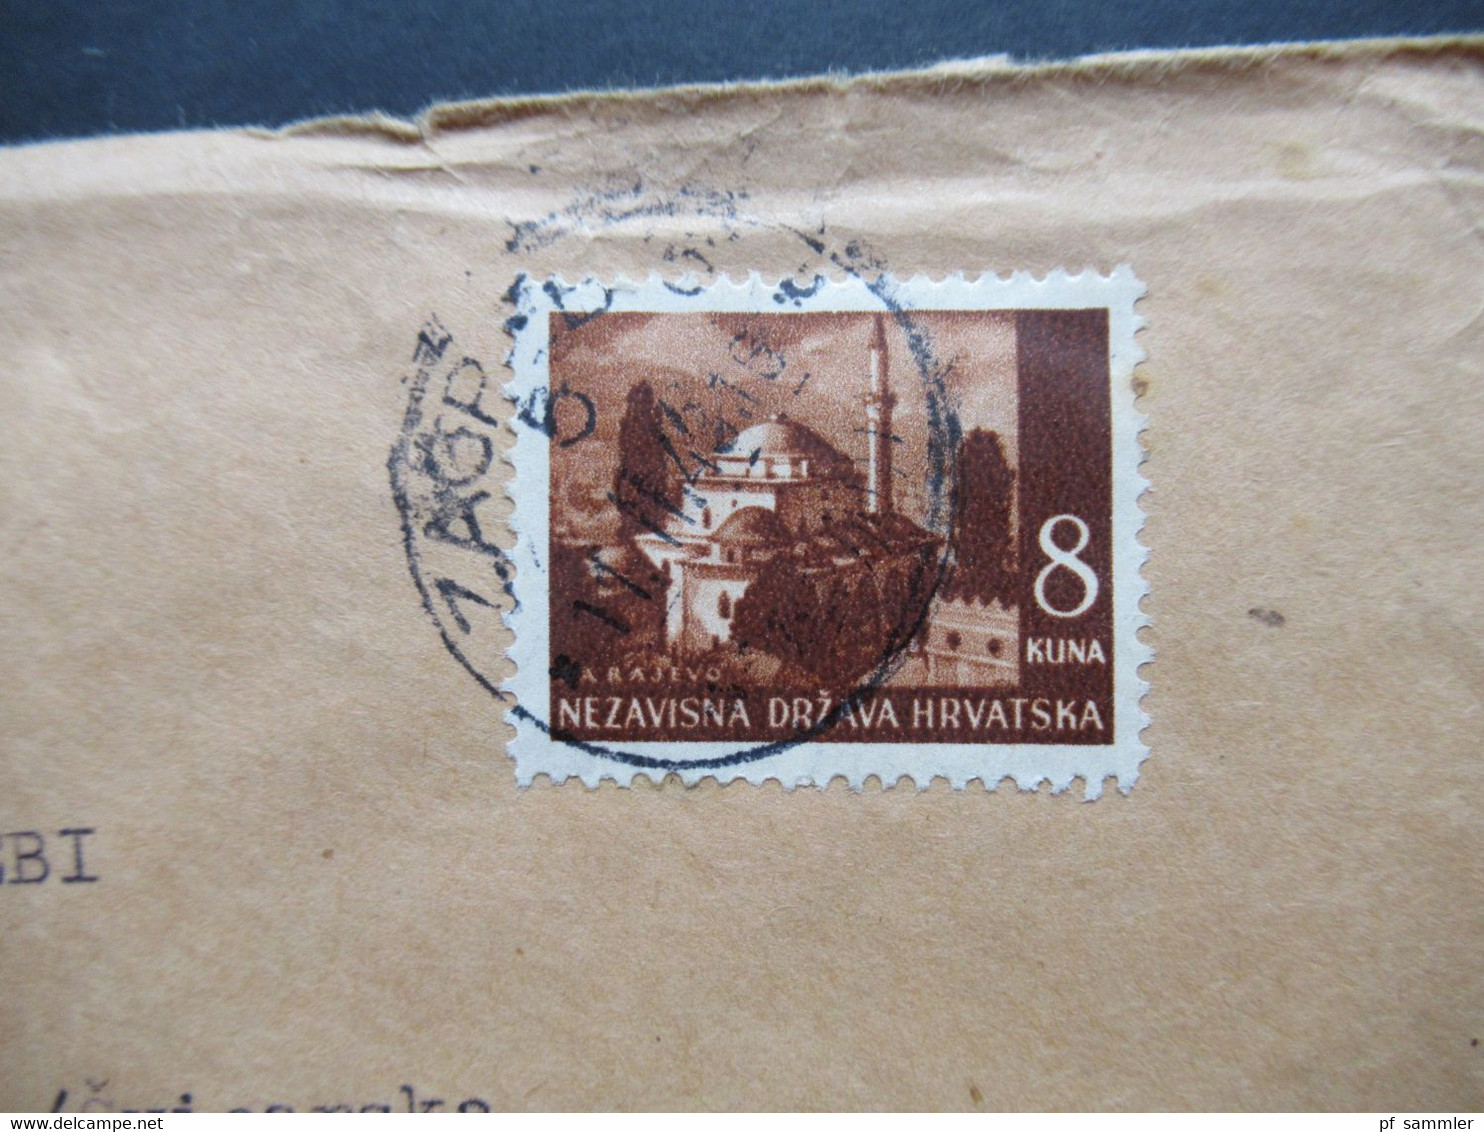 Kroatien 1943 Zensurbeleg Freimarken Landschaften Nr. 59 EF OKW Mehrfachzensur Abs: Dr. VUK Von Smic Vakanovic Nach Bern - Kroatien